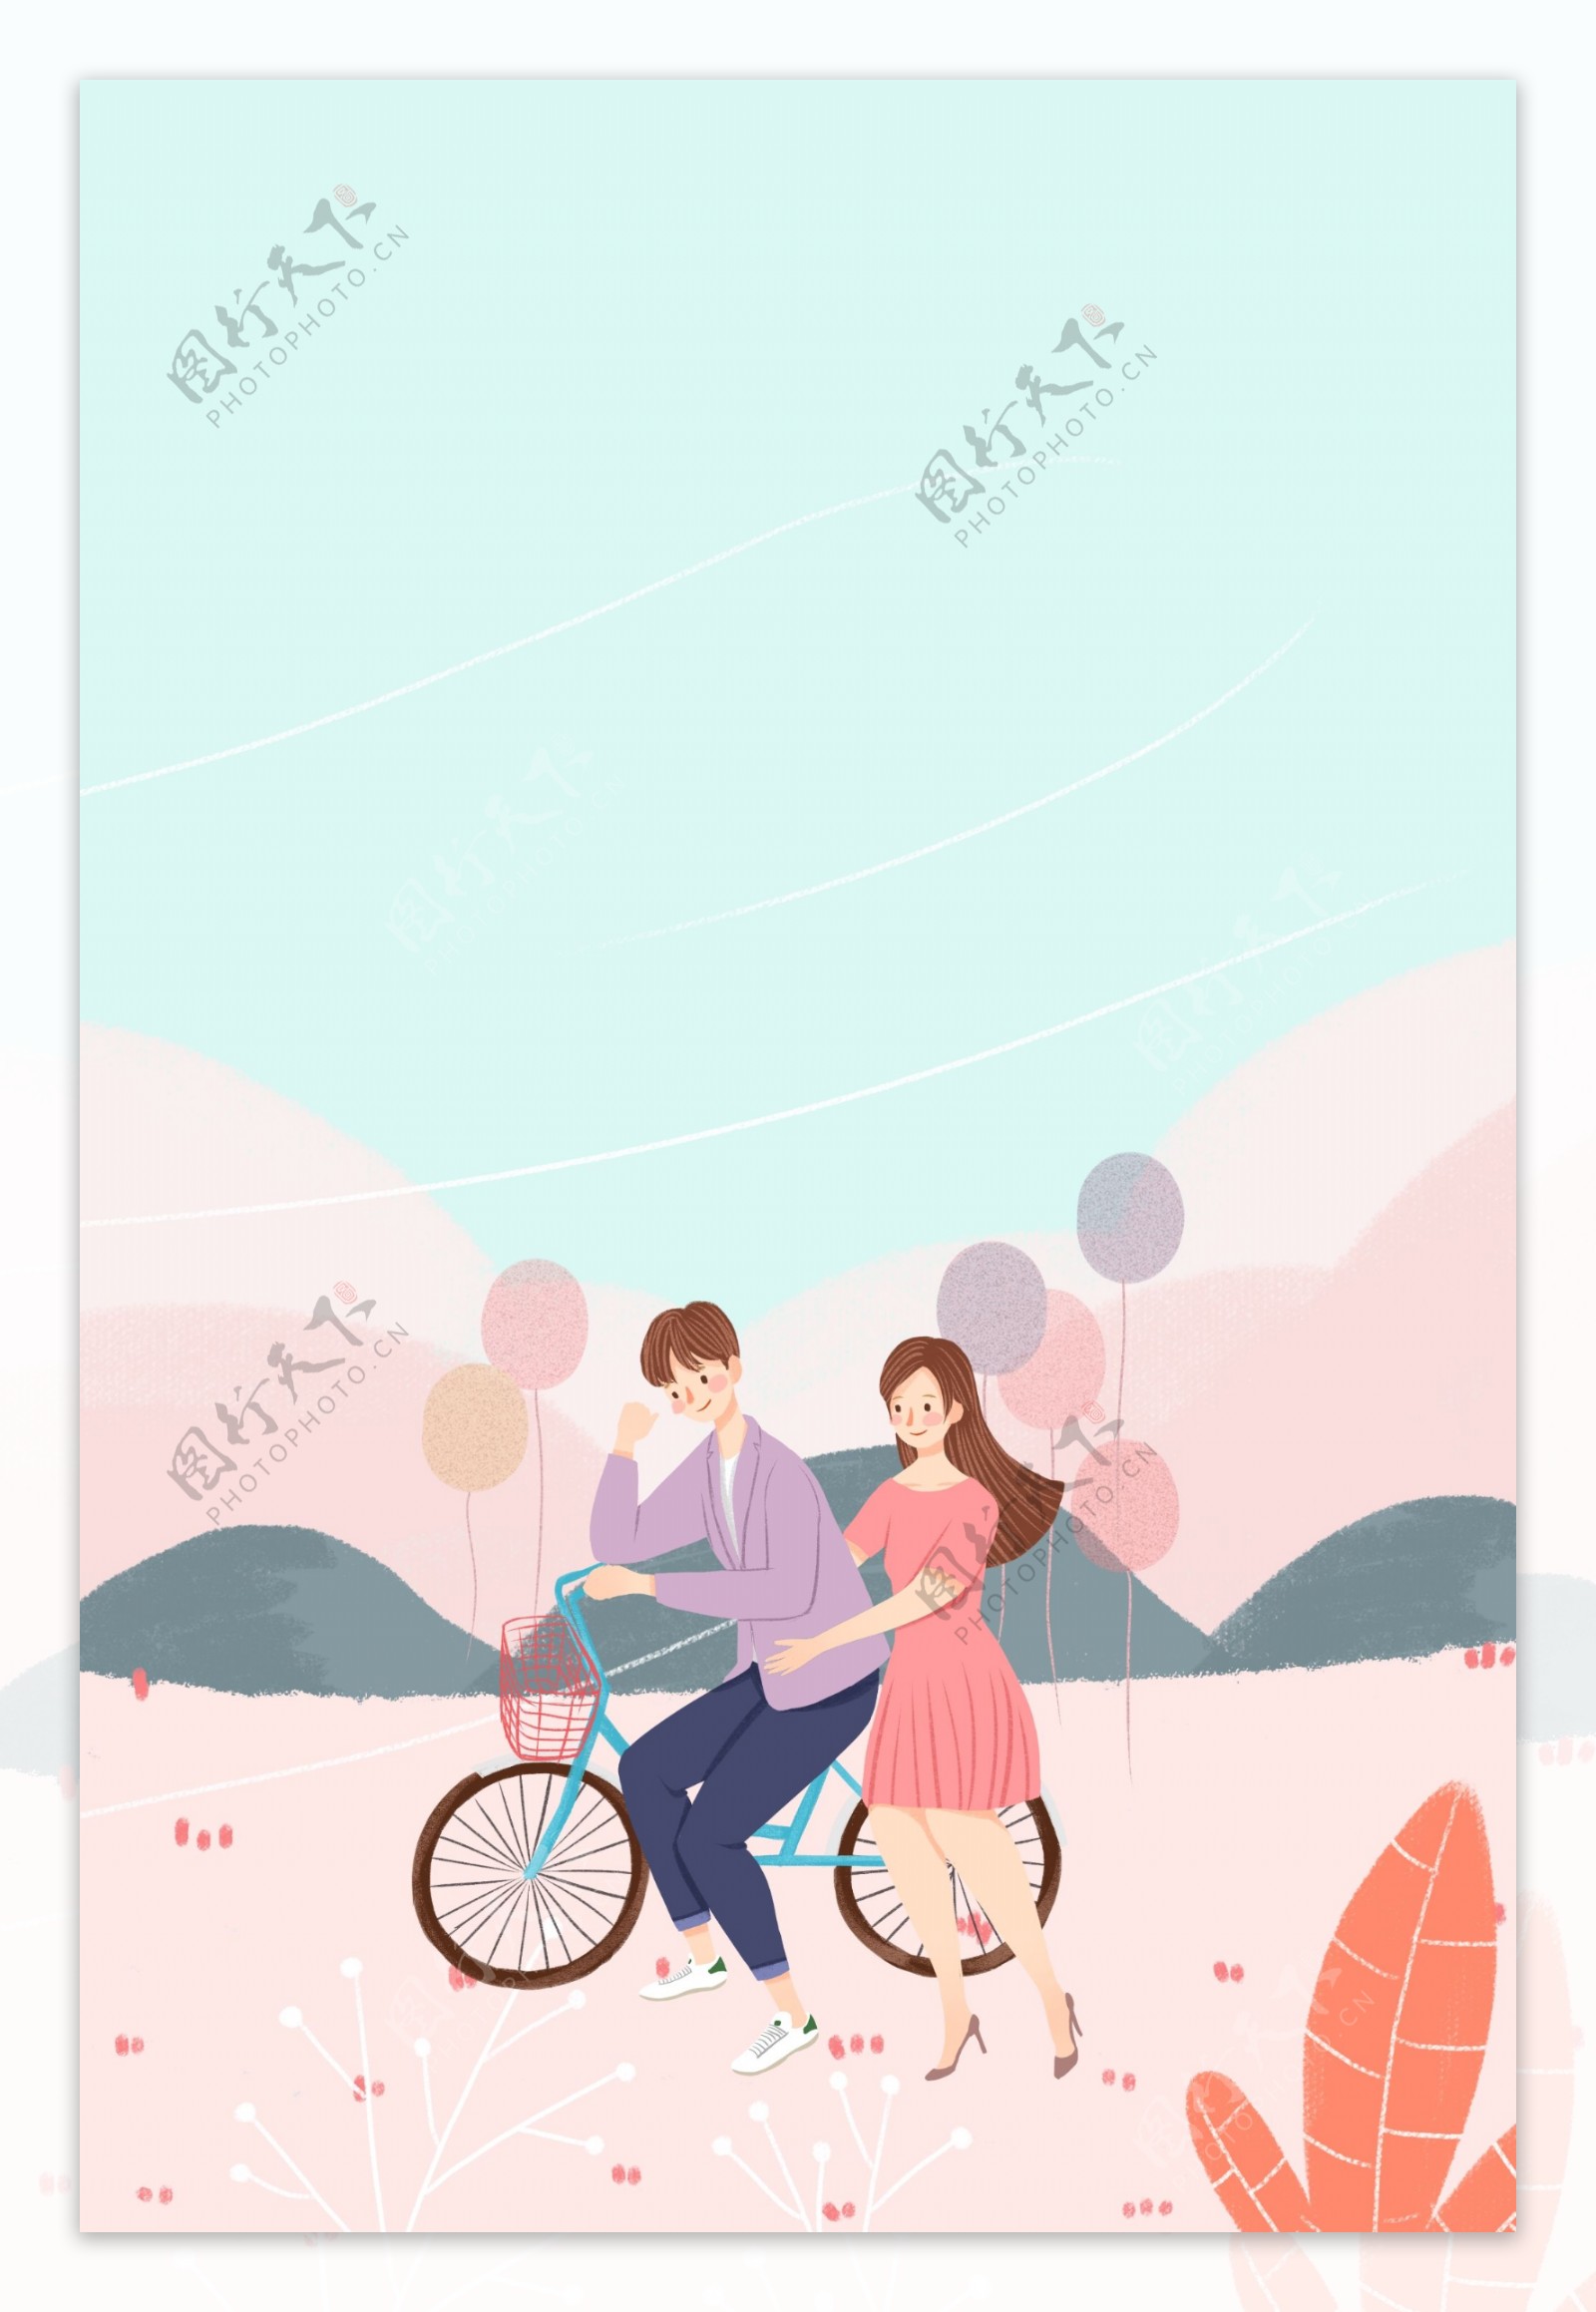 情人节骑单车旅行梦幻插画海报